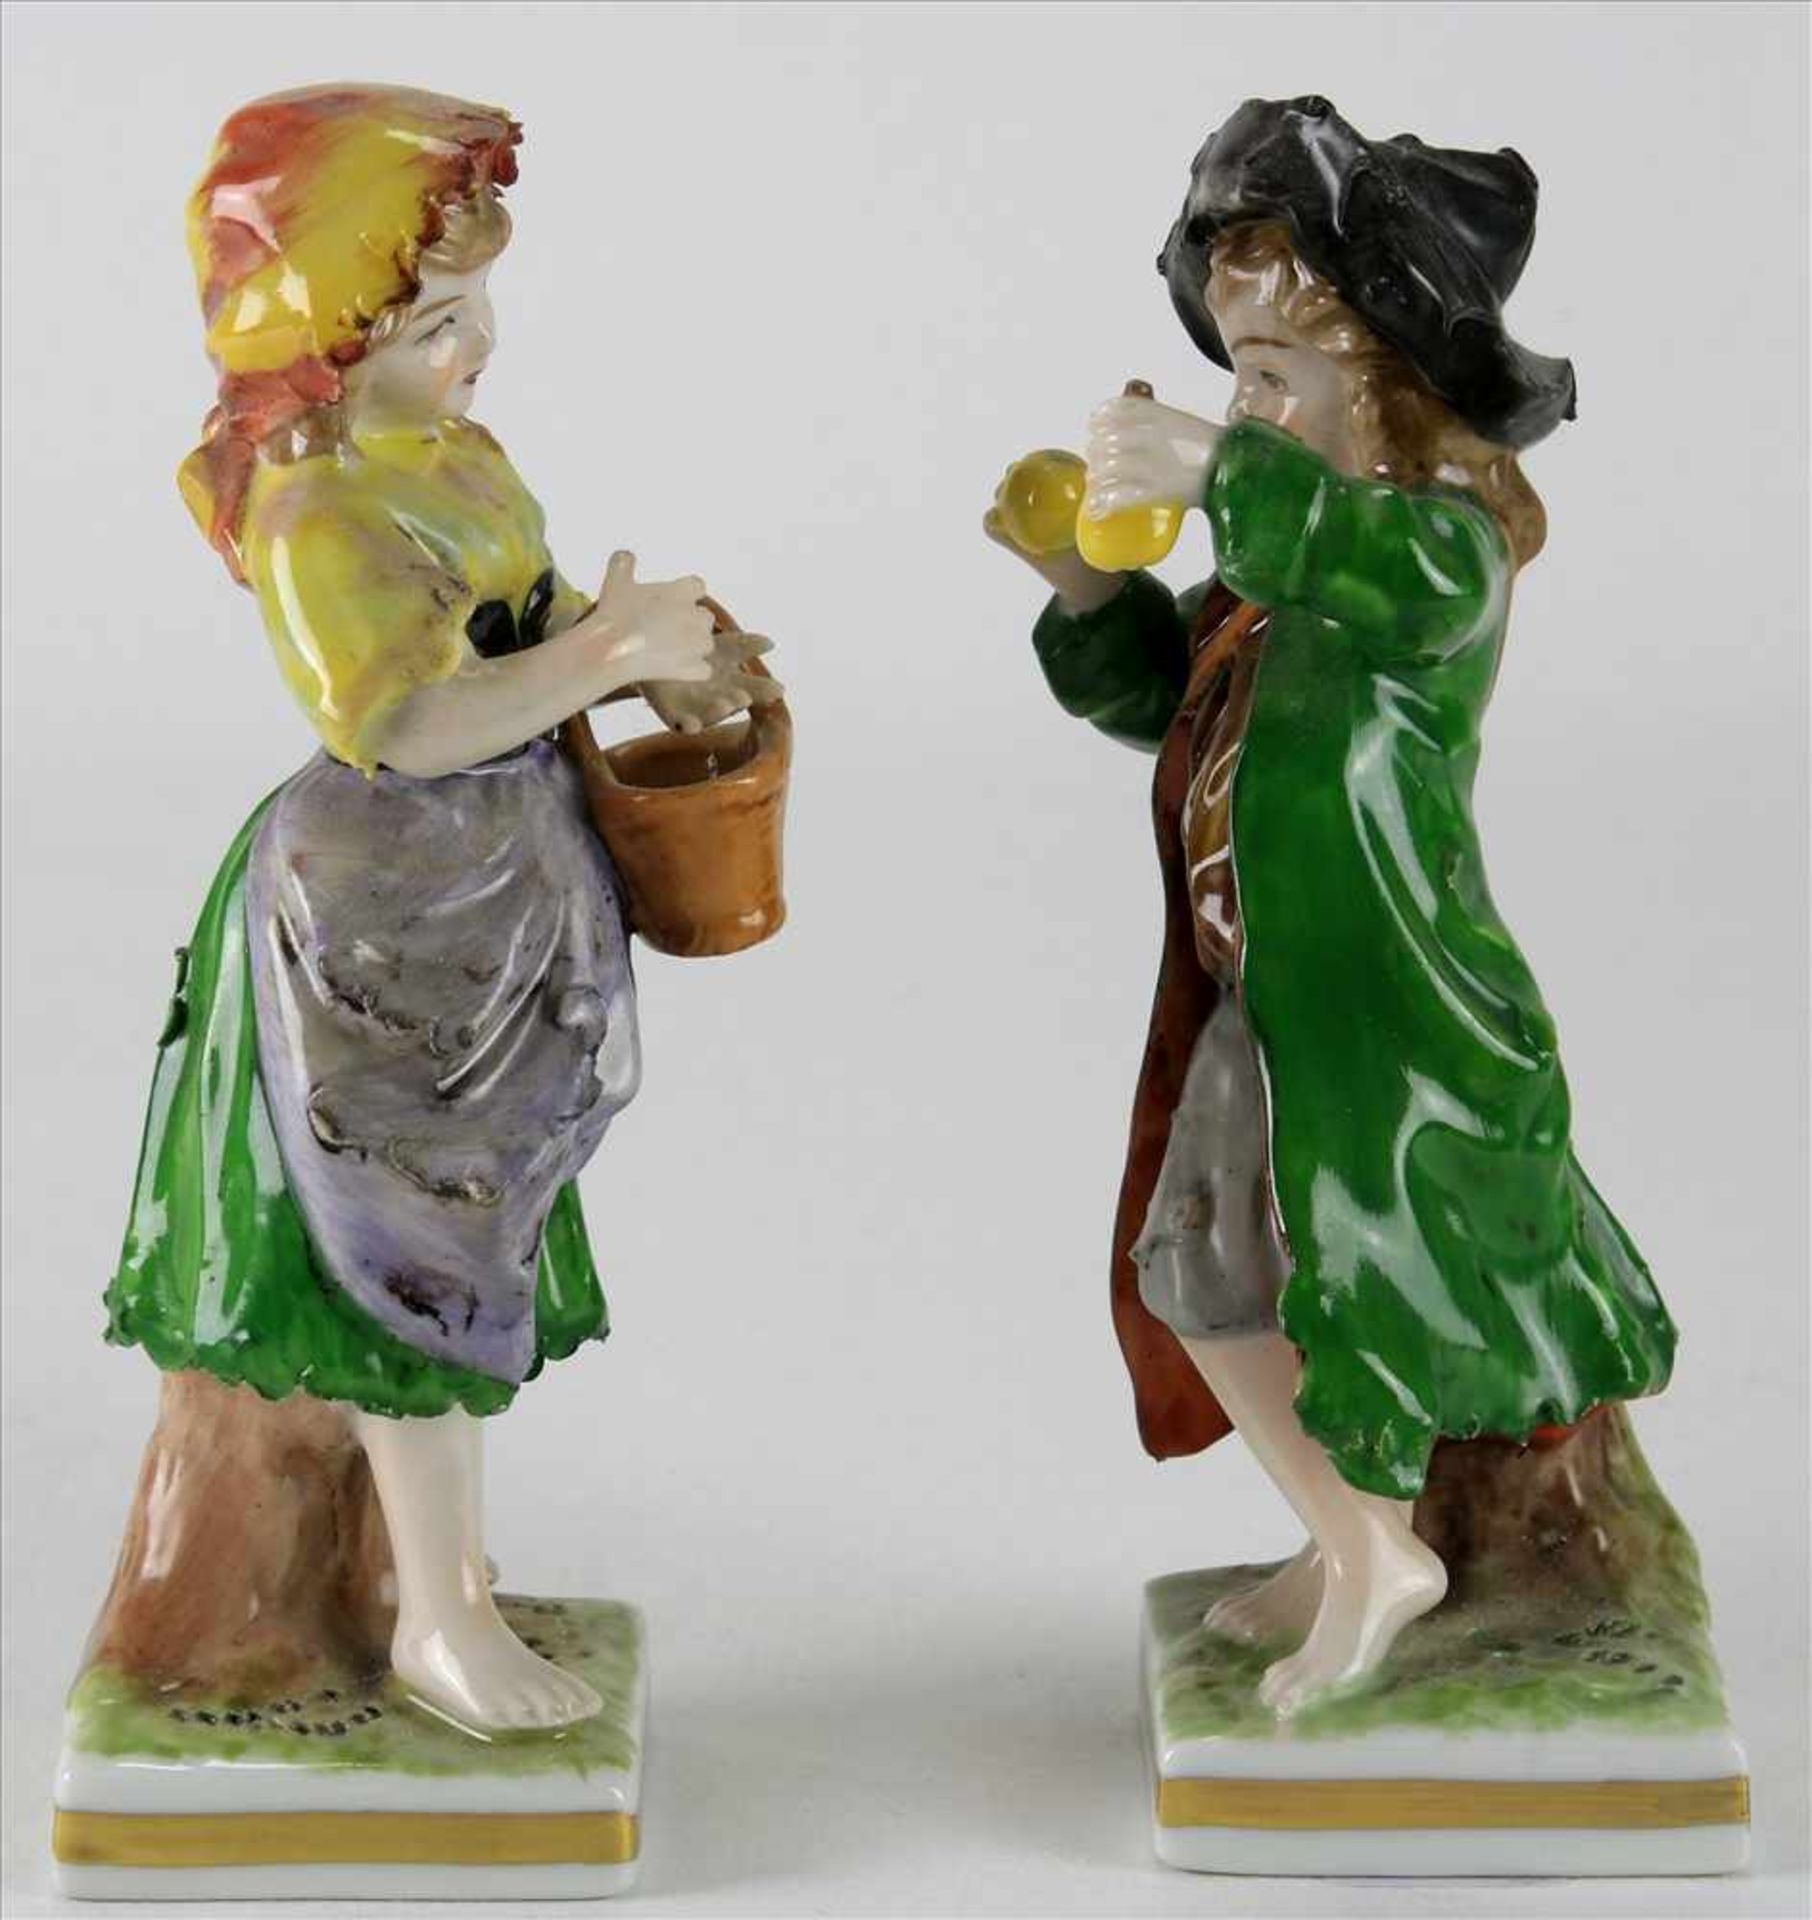 Paar PorzellanfigurenRudolstadt um 1900. Junge mit Äpfeln und Mädchen mit Korb. Polychrome Staffage. - Image 3 of 5